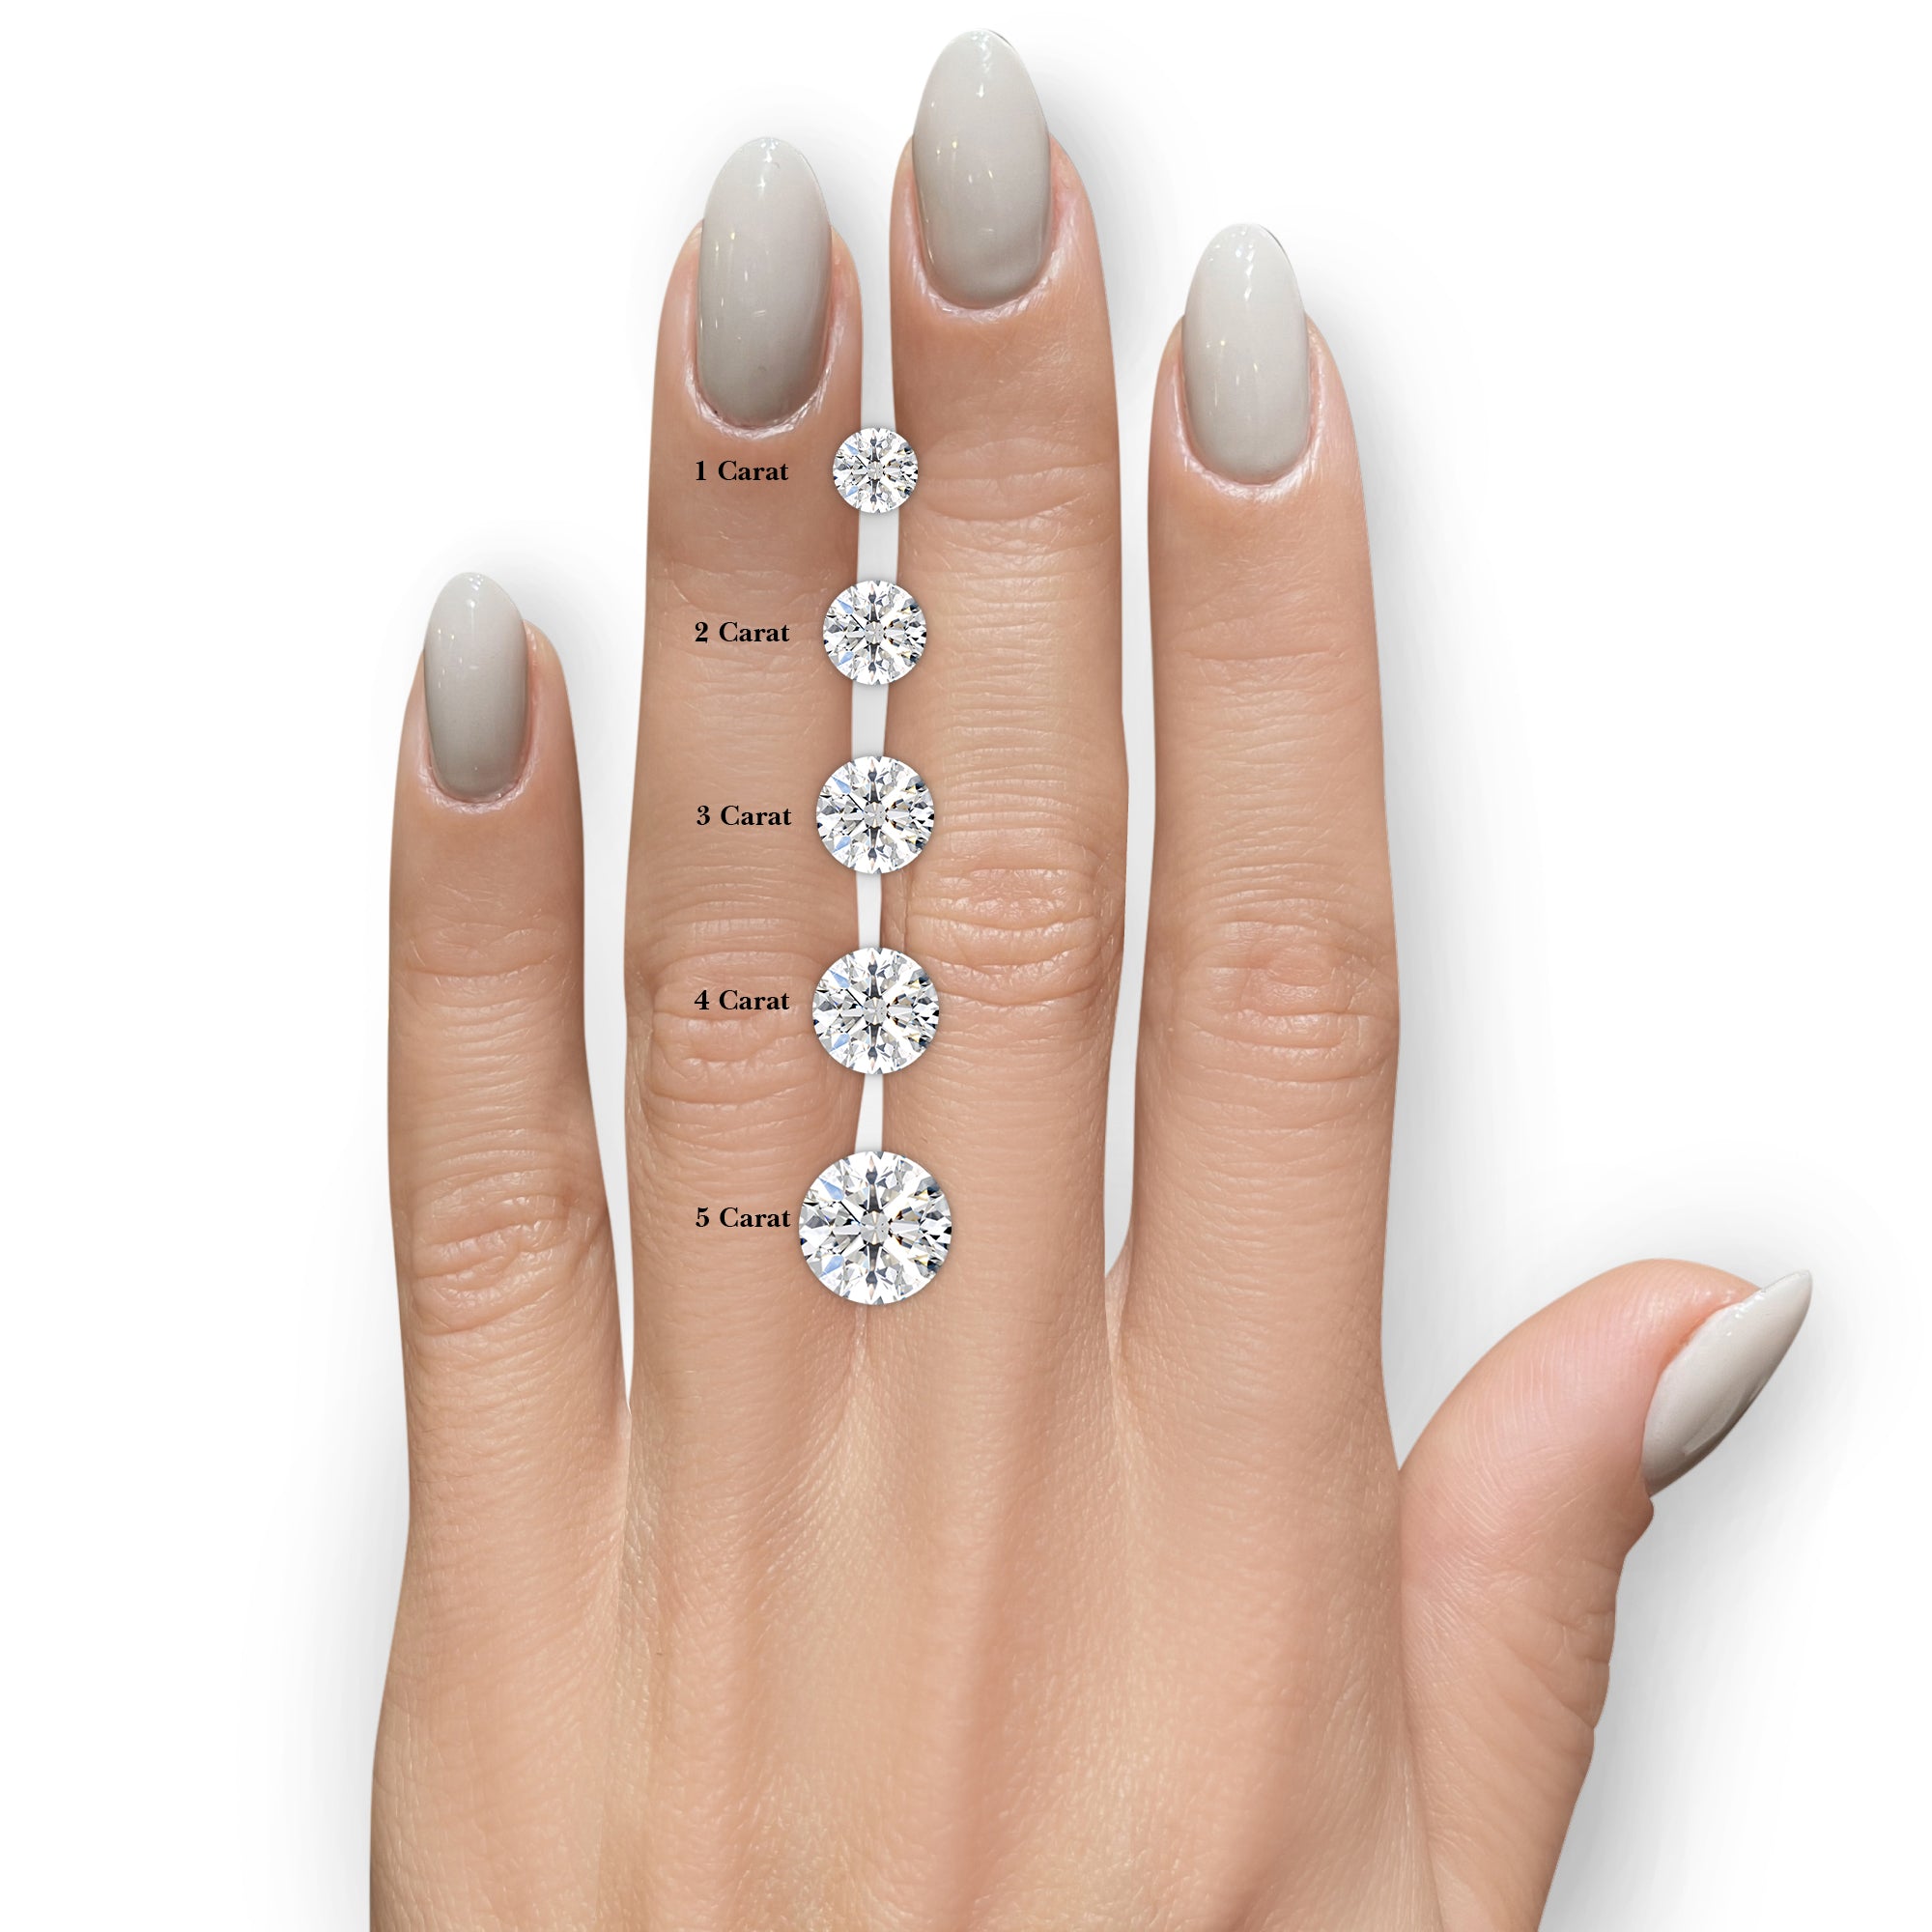 Reagan Diamond Engagement Ring -14K White Gold